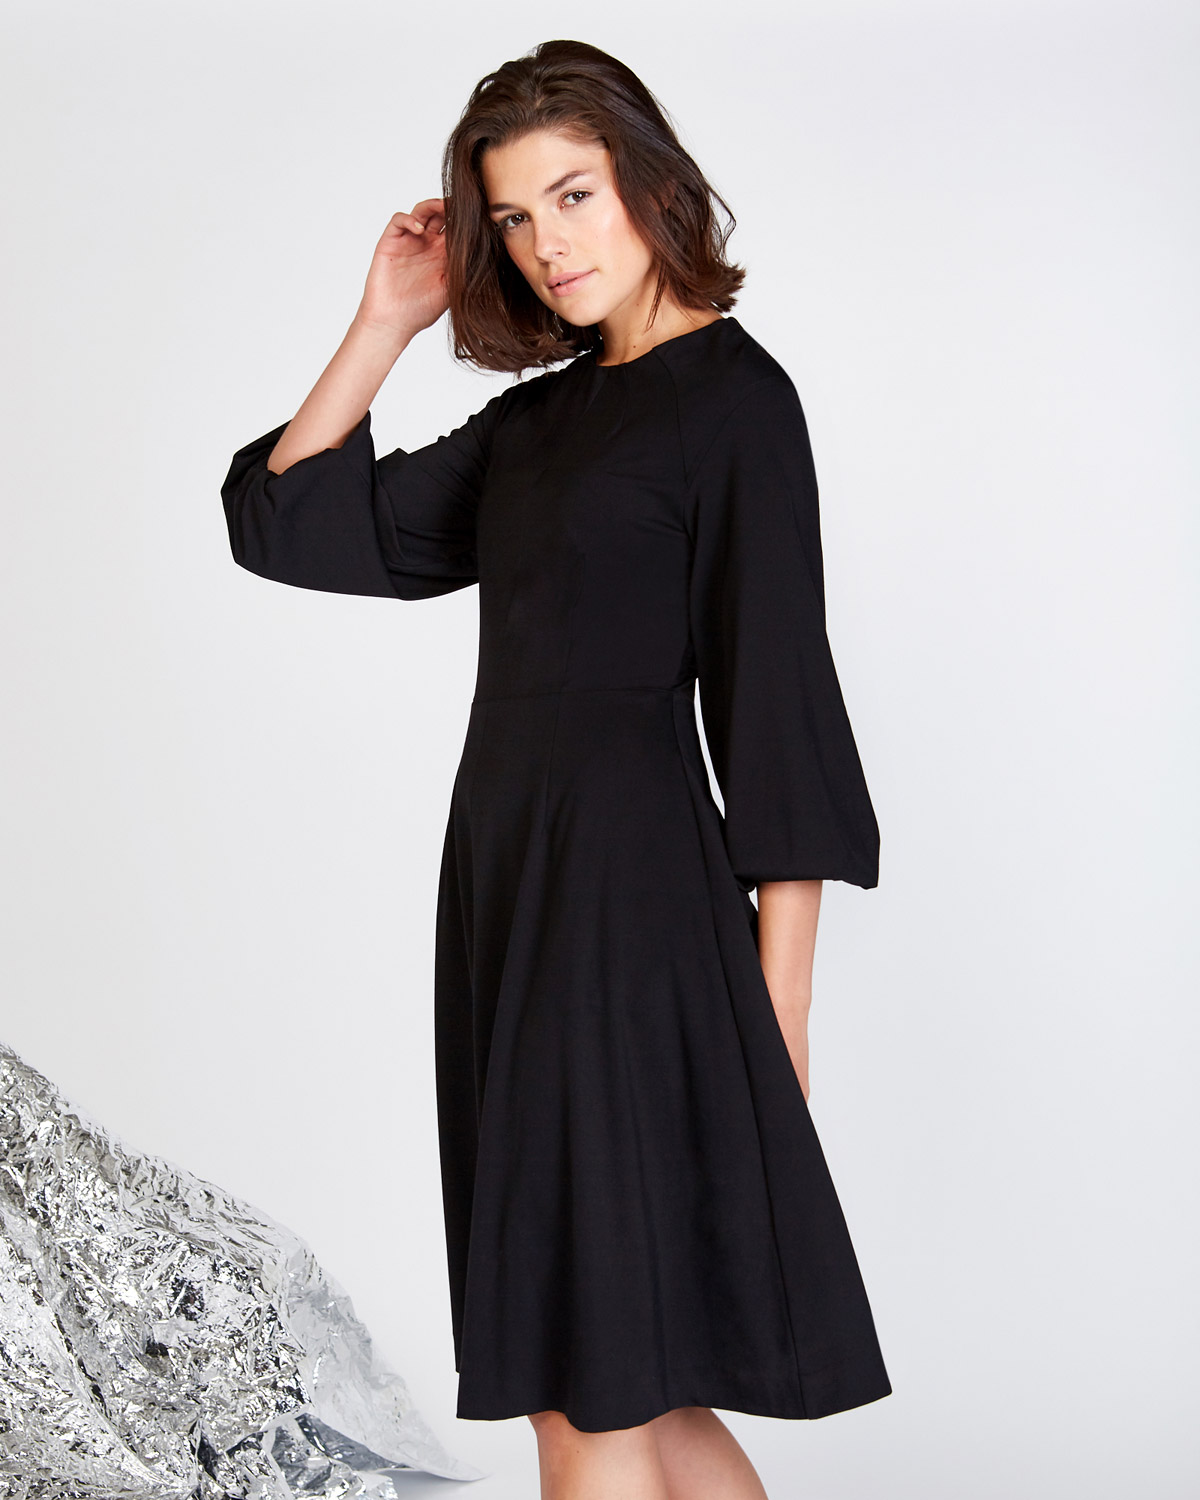 dunnes black dress